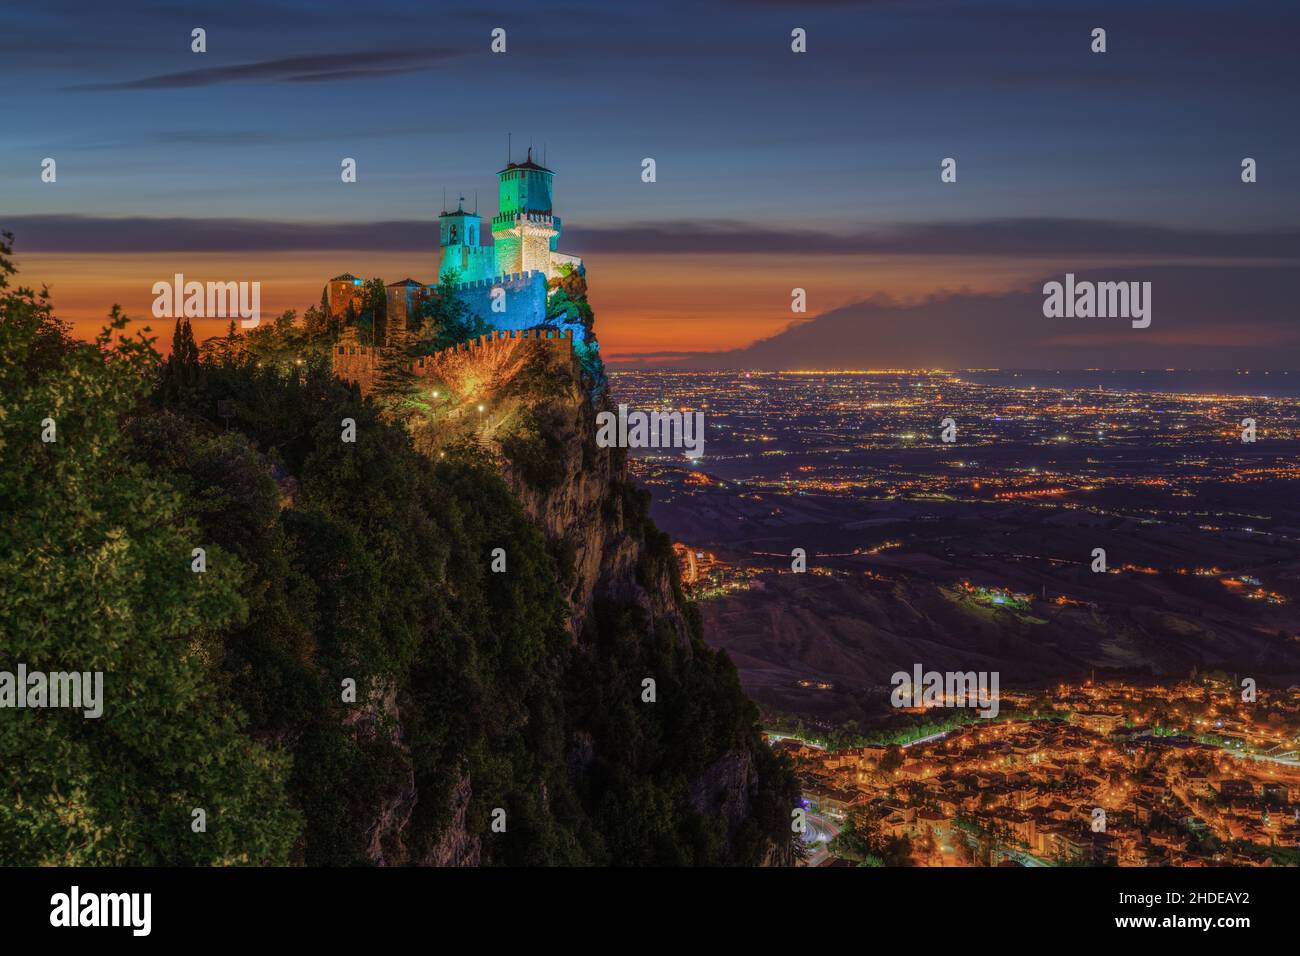 Splendida vista al tramonto sul monte Titano e sulla torre Guaita nella Repubblica di San Marino Foto Stock